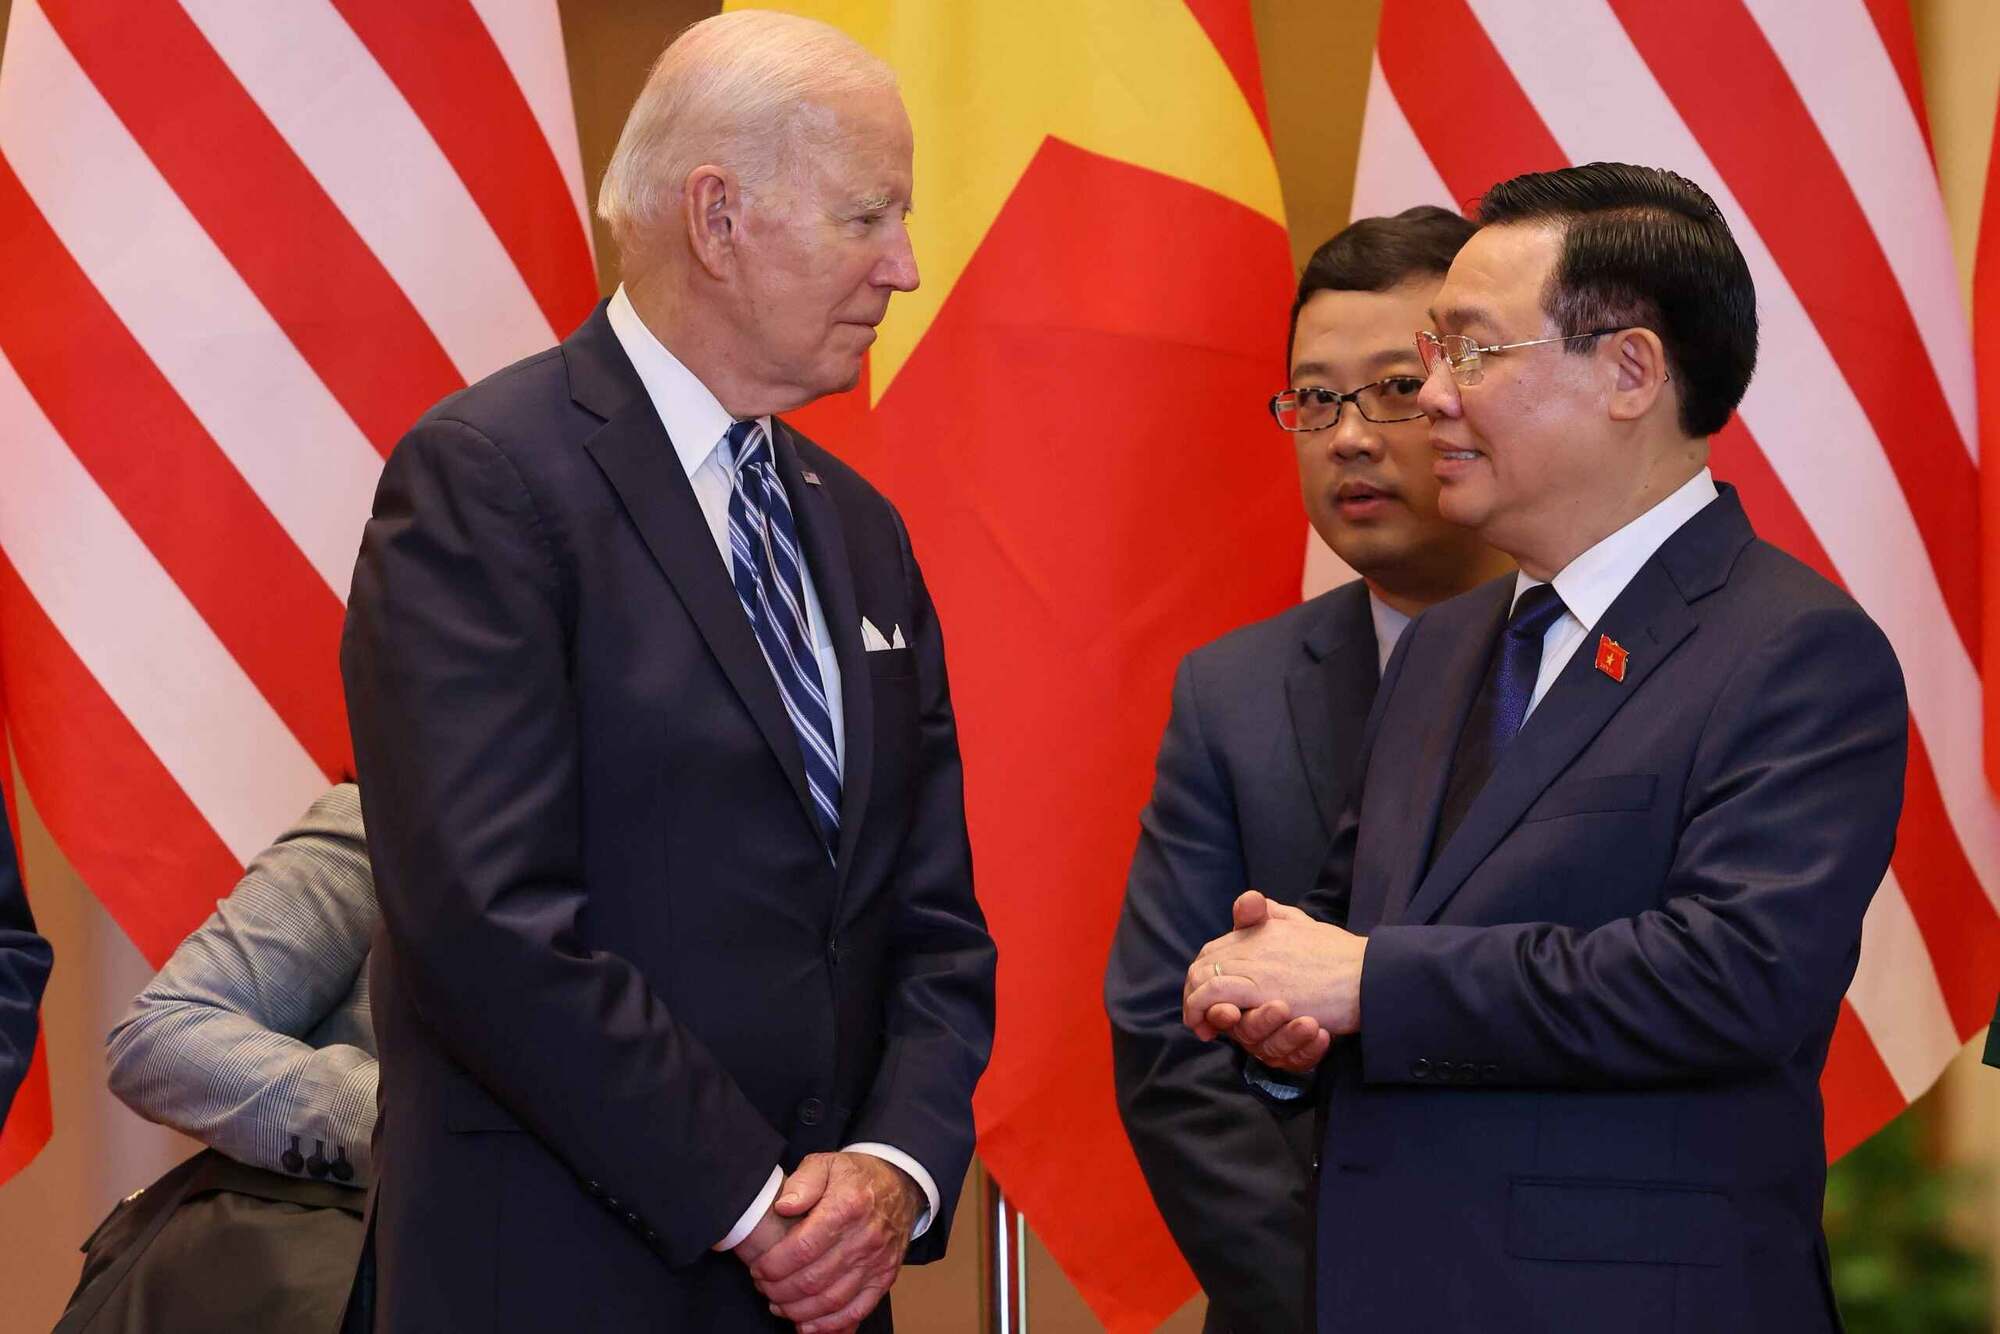  Chủ tịch Quốc hội Vương Đình Huệ bày tỏ vui mừng chào đón Tổng thống Joe Biden là vị Tổng thống Mỹ đầu tiên tới Nhà Quốc hội Việt Nam. Ảnh: Hải Nguyễn